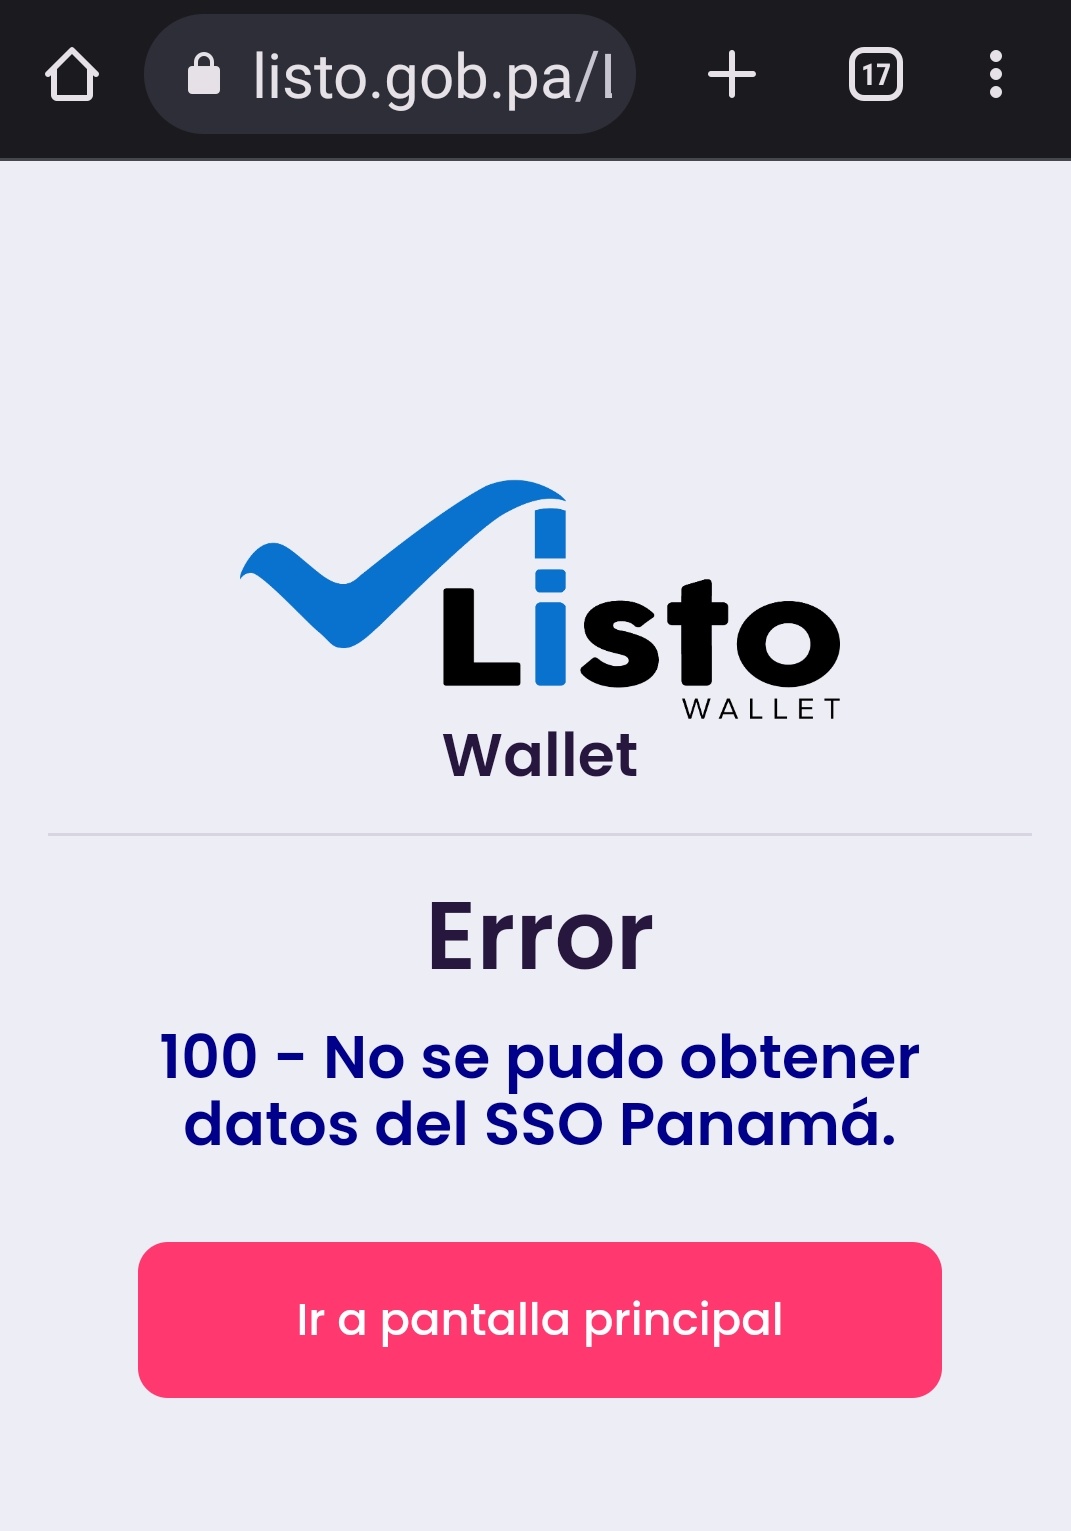 Beca Digital: Plataforma “Listo Wallet” fuera de servicio